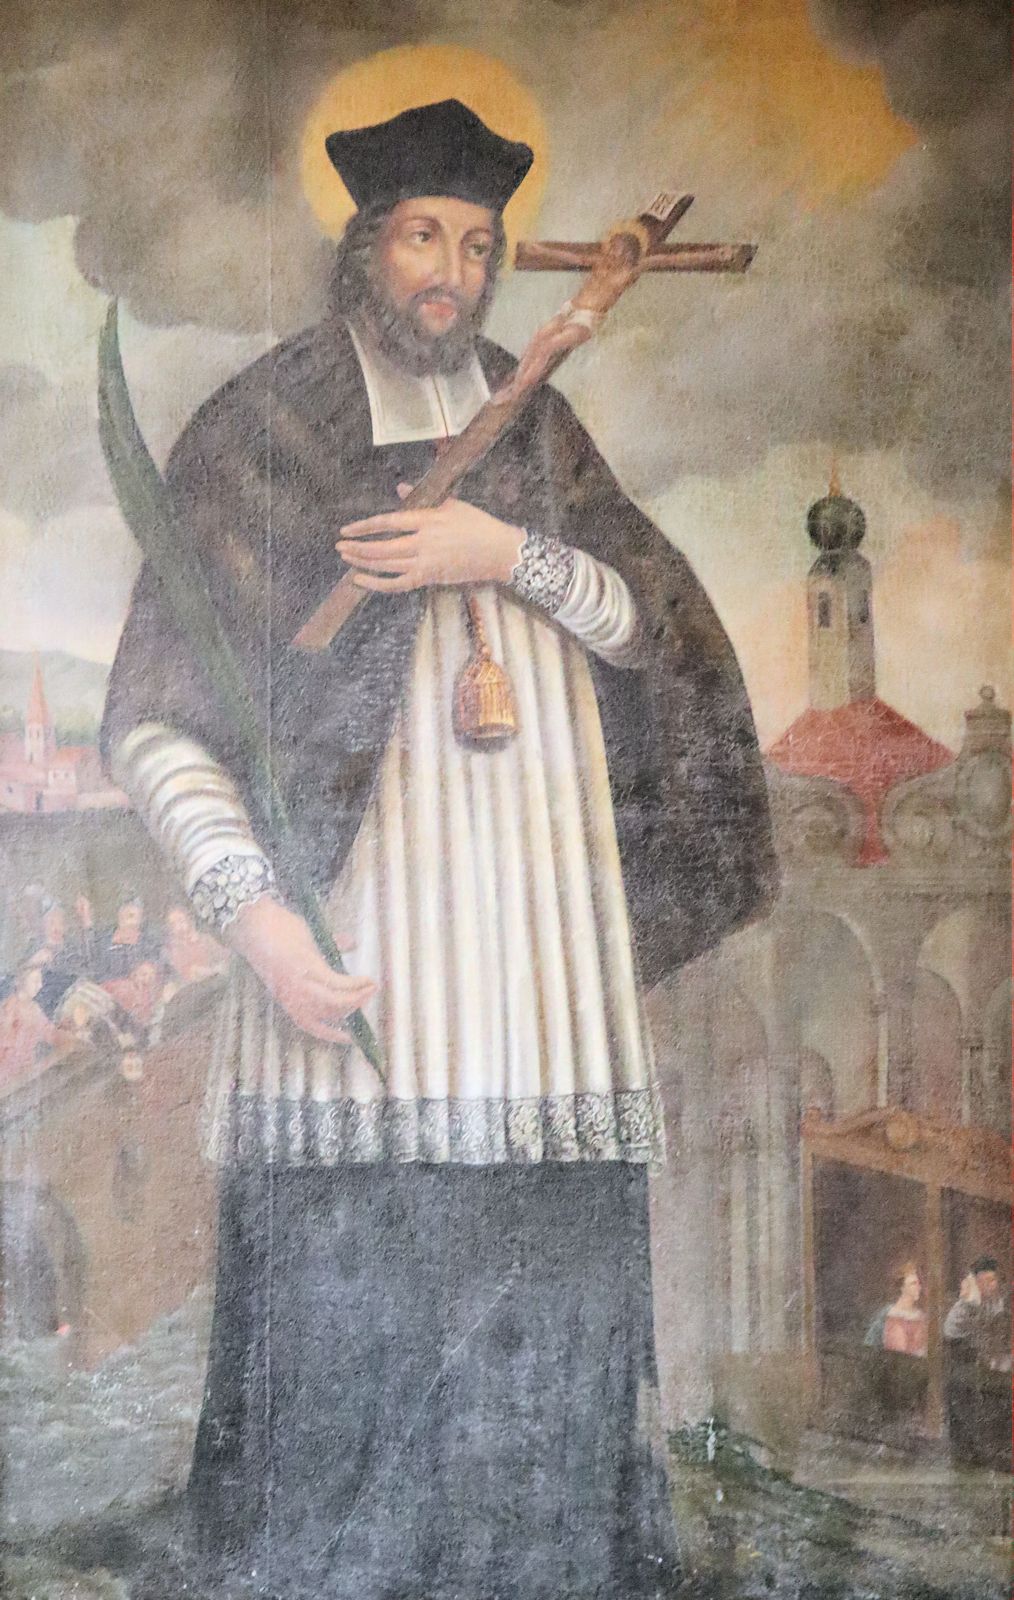 Bild in der Bergkirche St. Salvator in Mainburg bei Ingolstadt